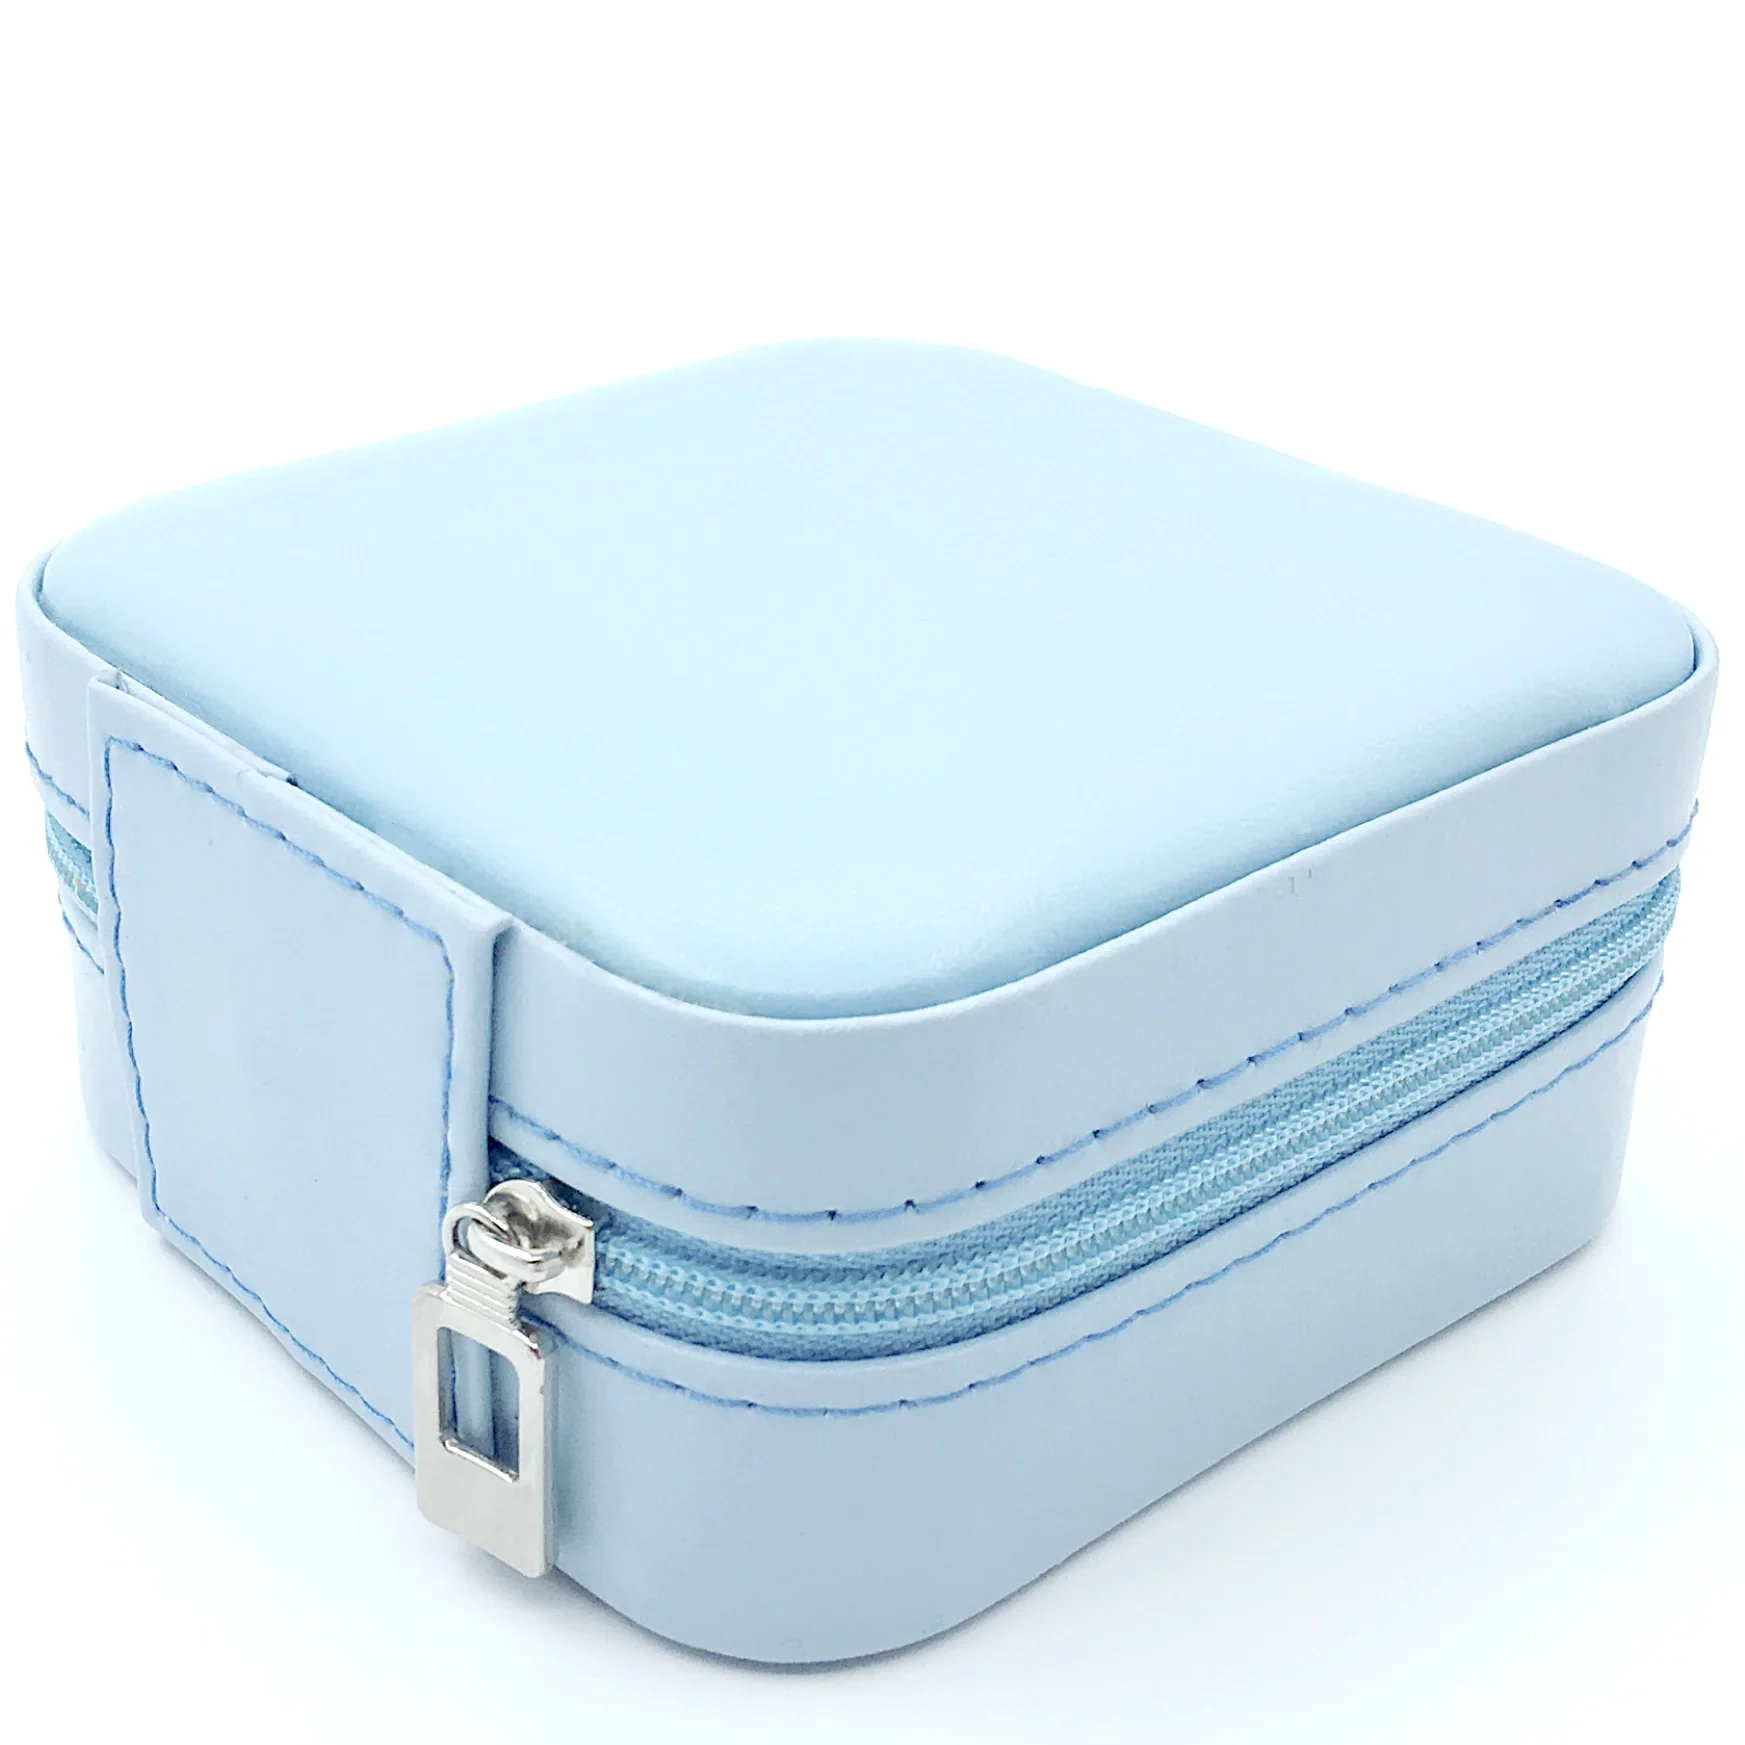 Pu Leather Travel Jewelry Box For Lady Organizer Display Storage Case ...